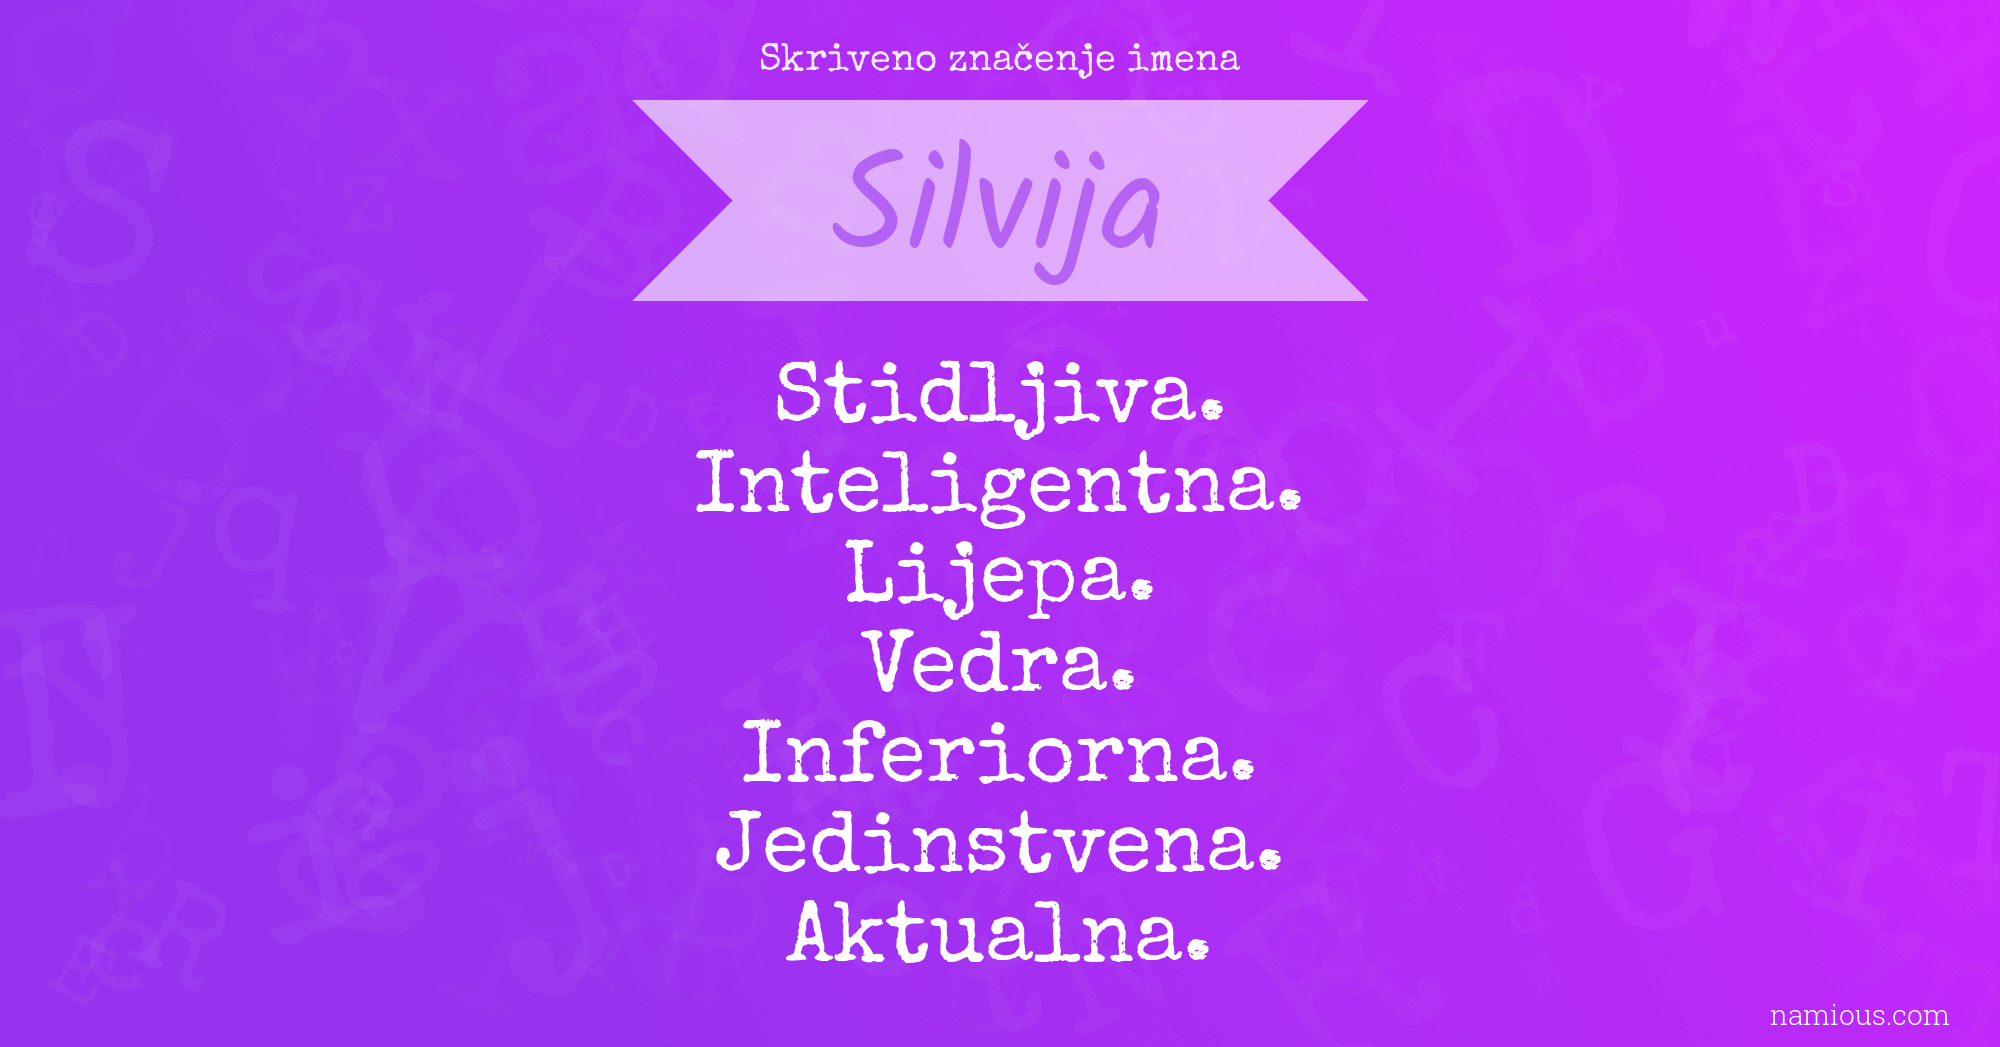 Skriveno značenje imena Silvija